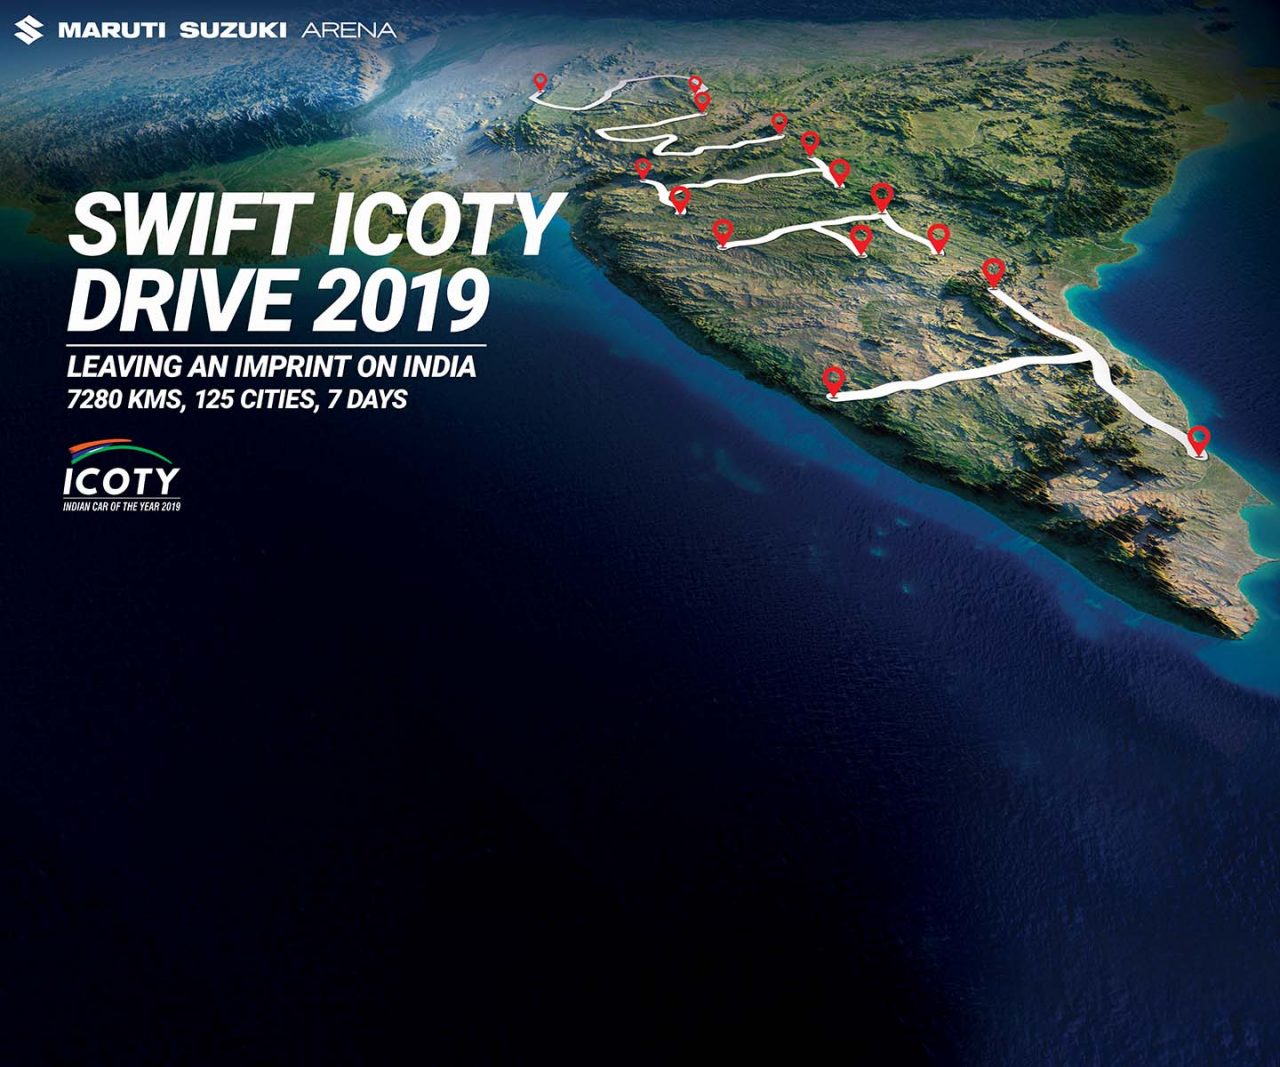 Swift ICOTY Drive 2019